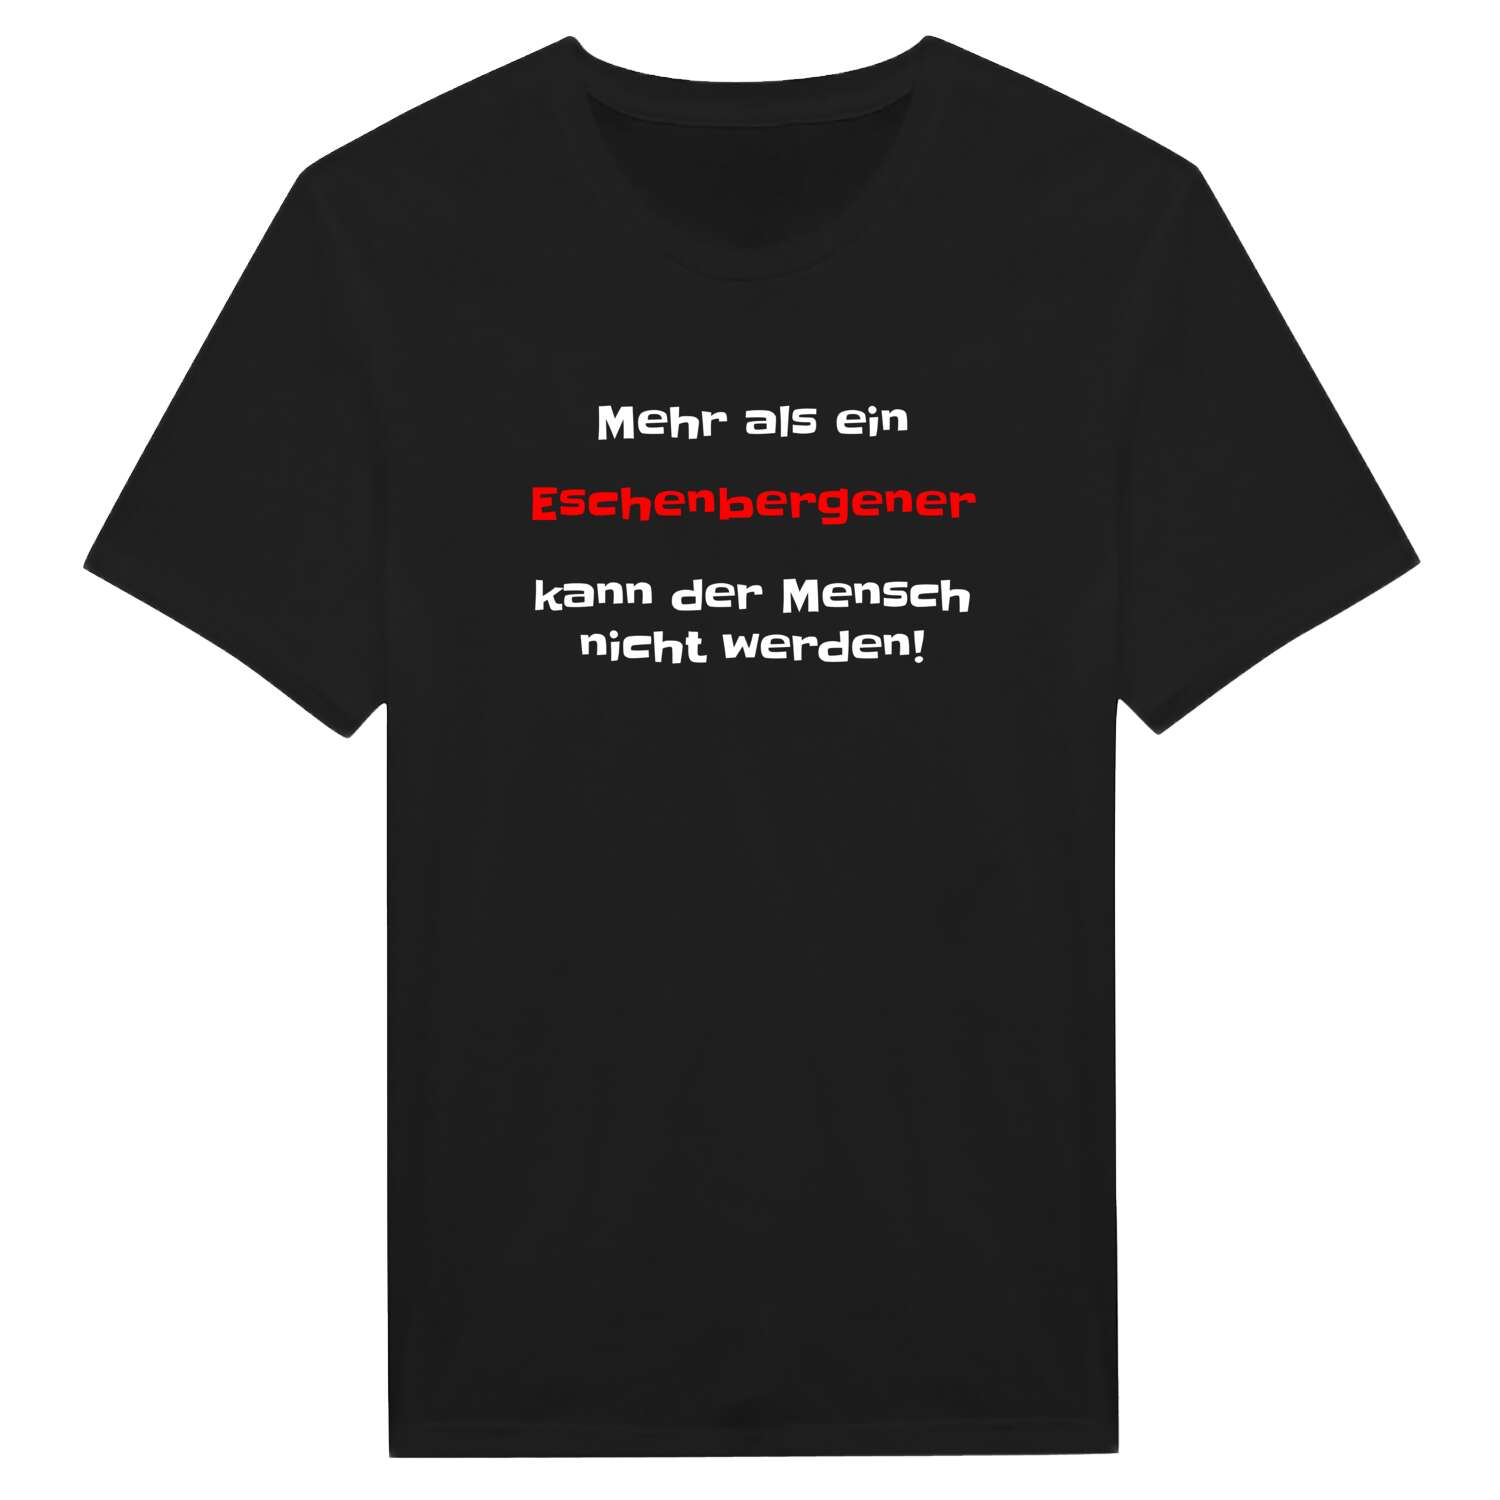 Eschenbergen T-Shirt »Mehr als ein«